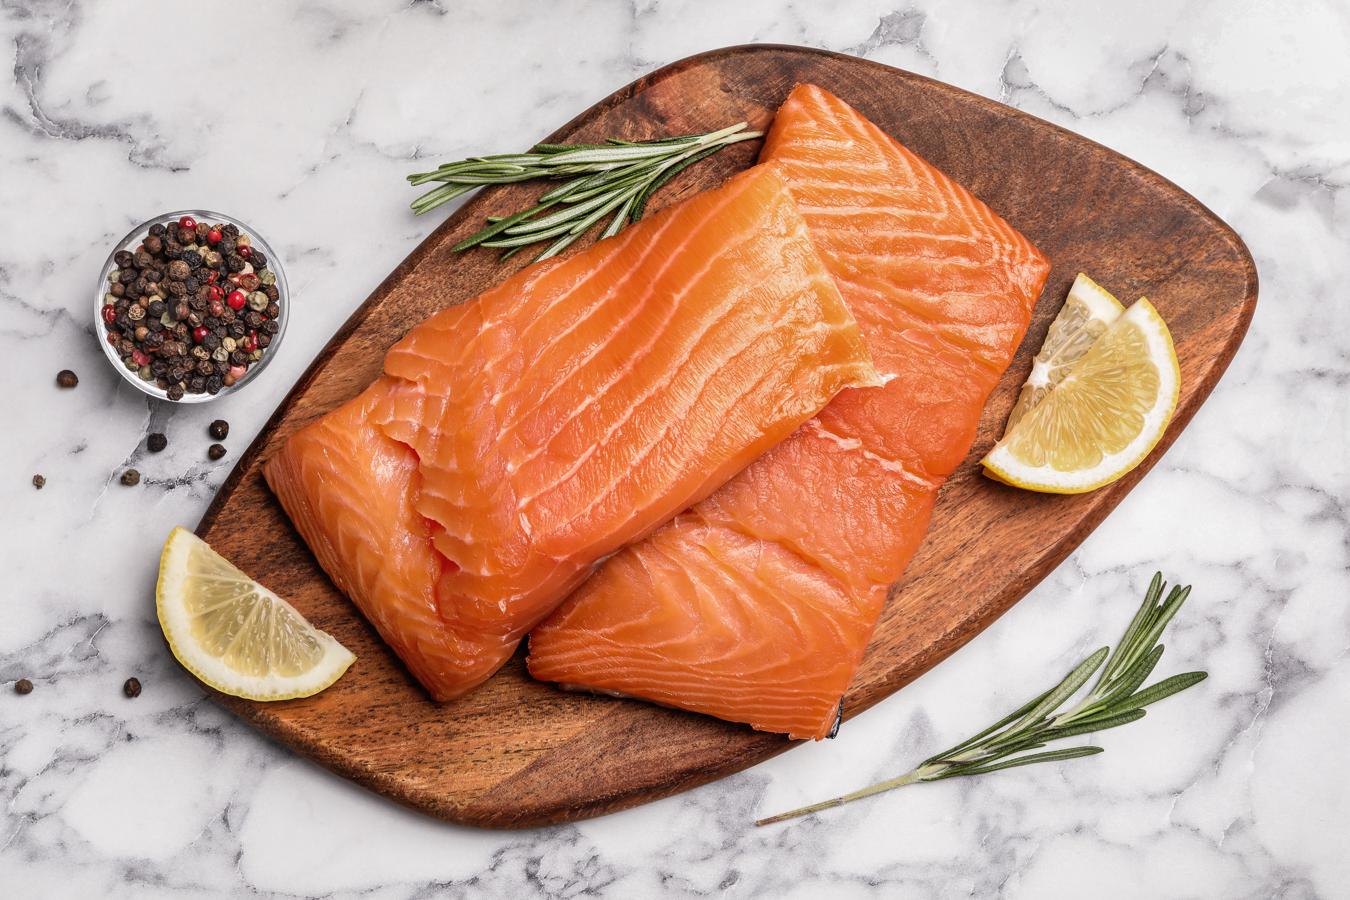 Salmón ahumado. El salmón ahumado aporta 25,4 gramos de proteína animal por cada 100 gramos de este pescado azul.